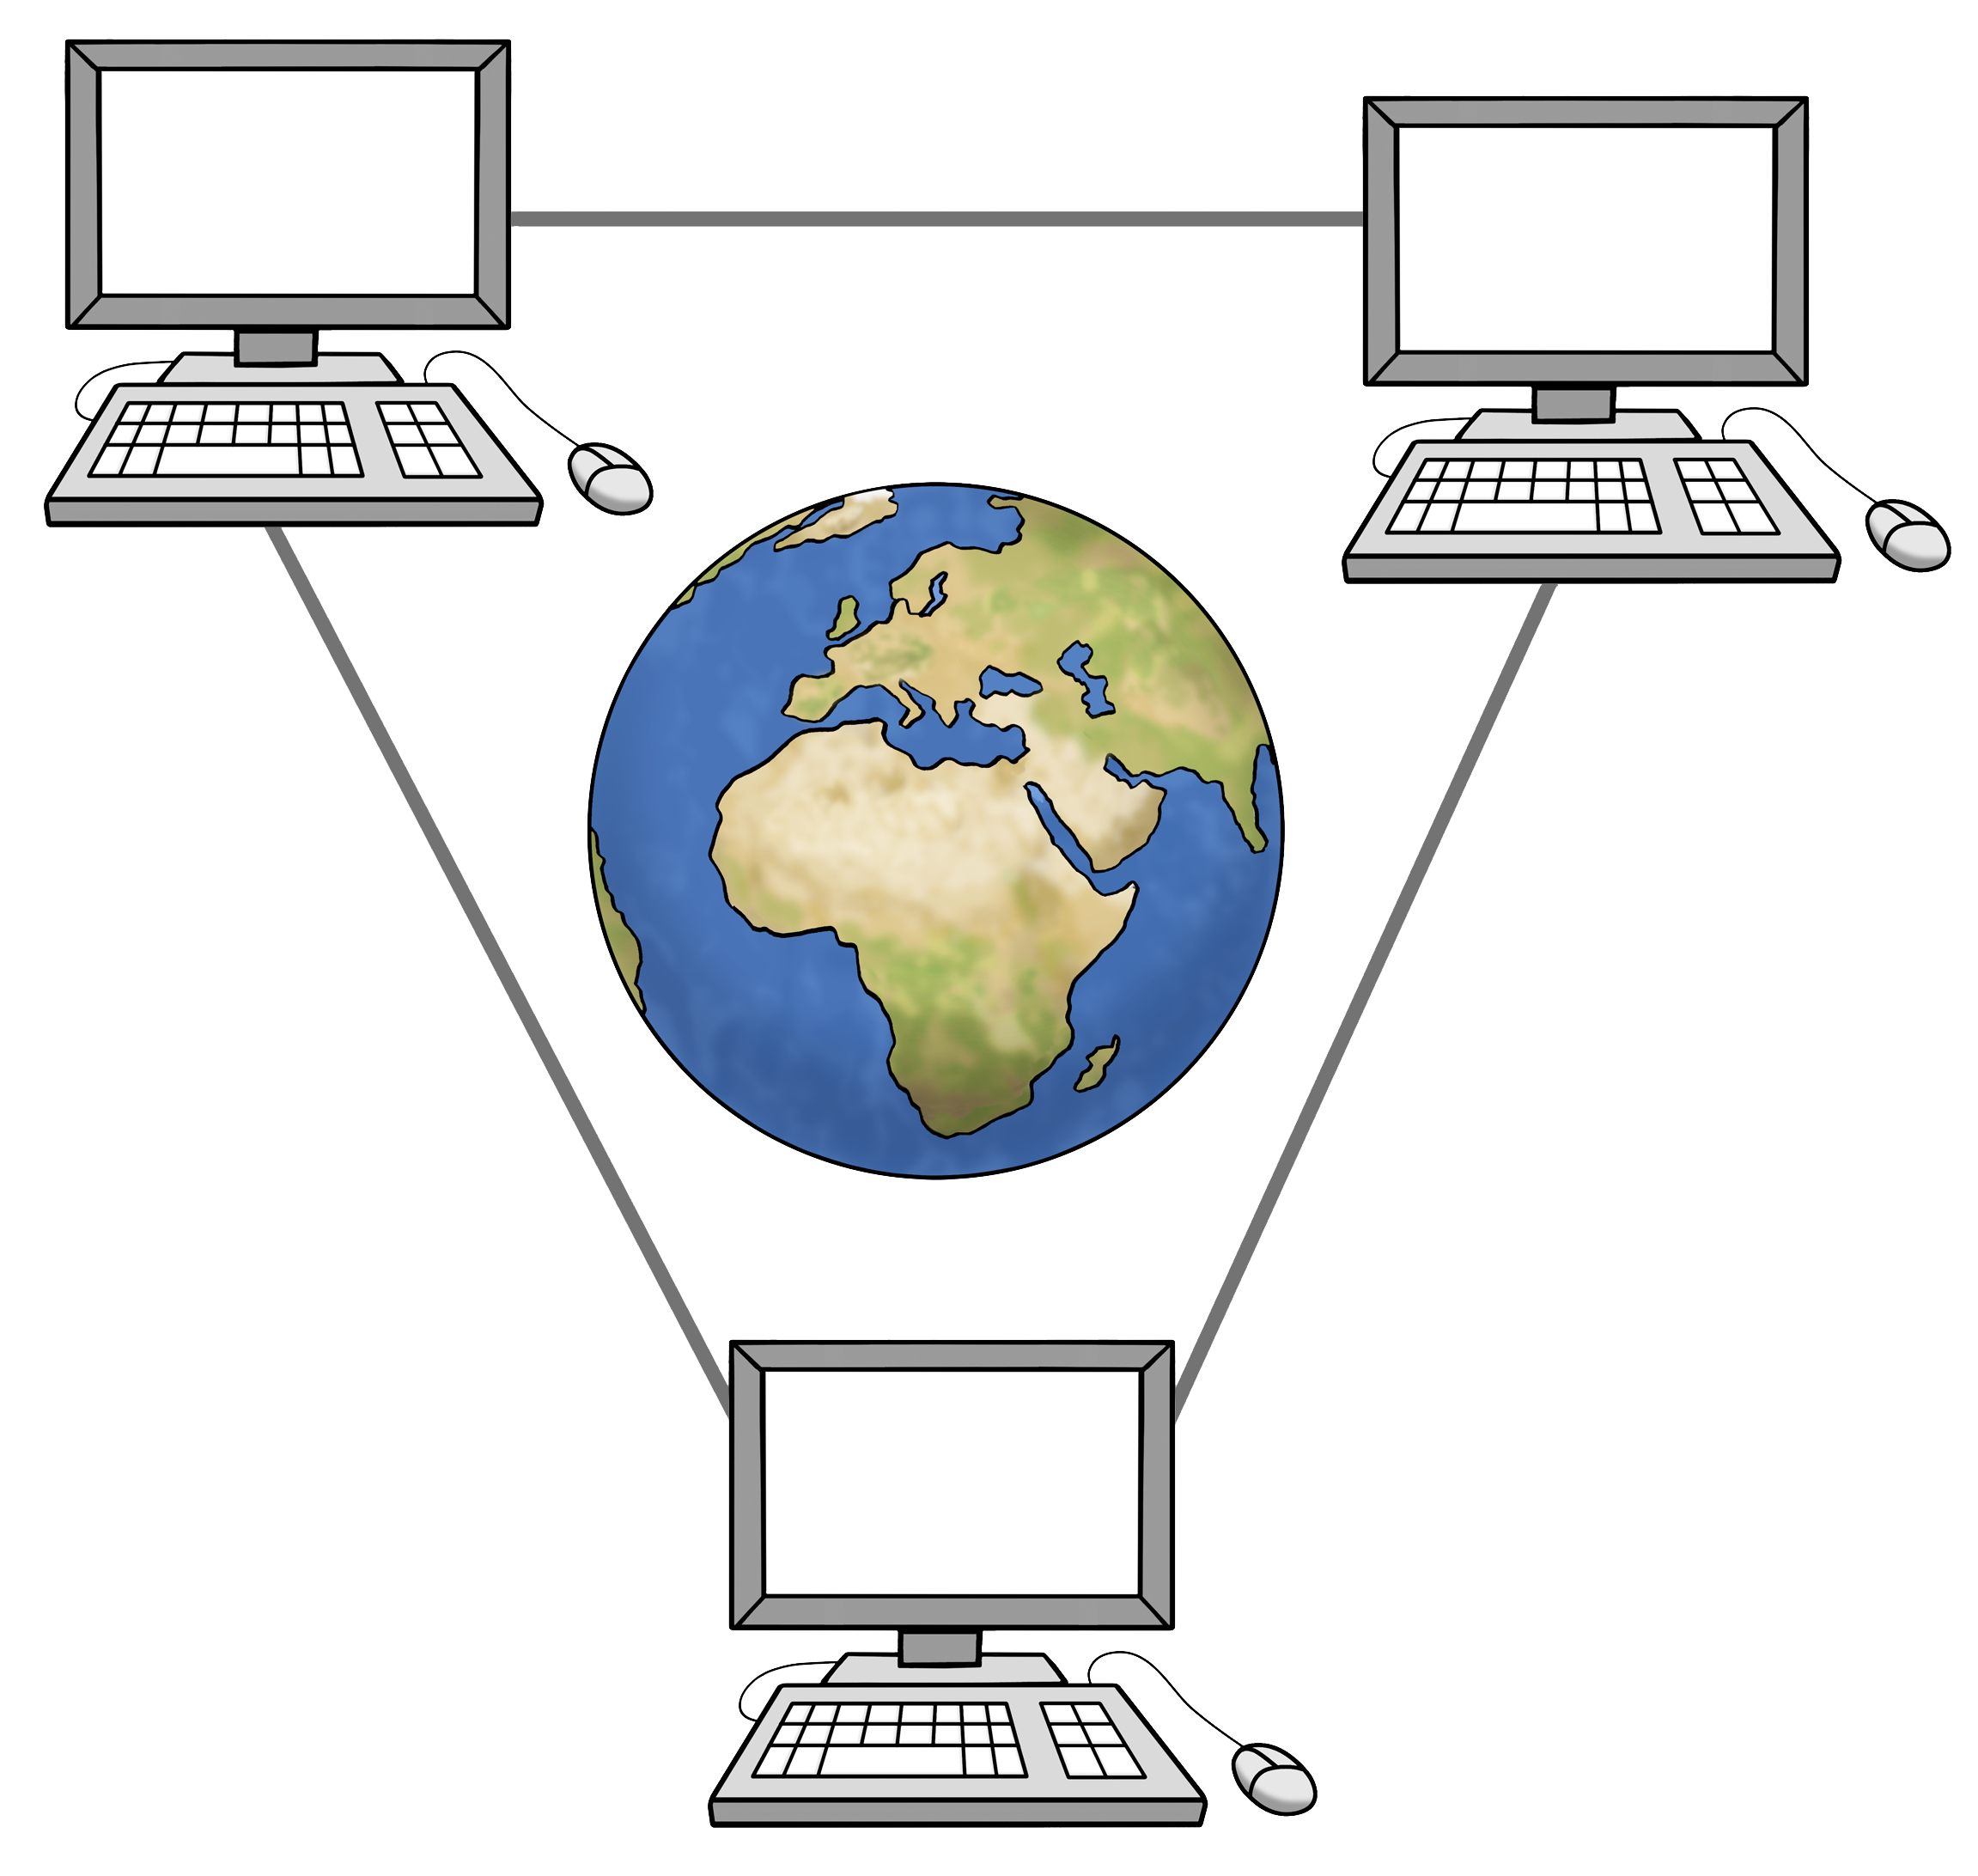 Mehrer Computer stehen im Kreis um eien Welt herum (Zeichnung).